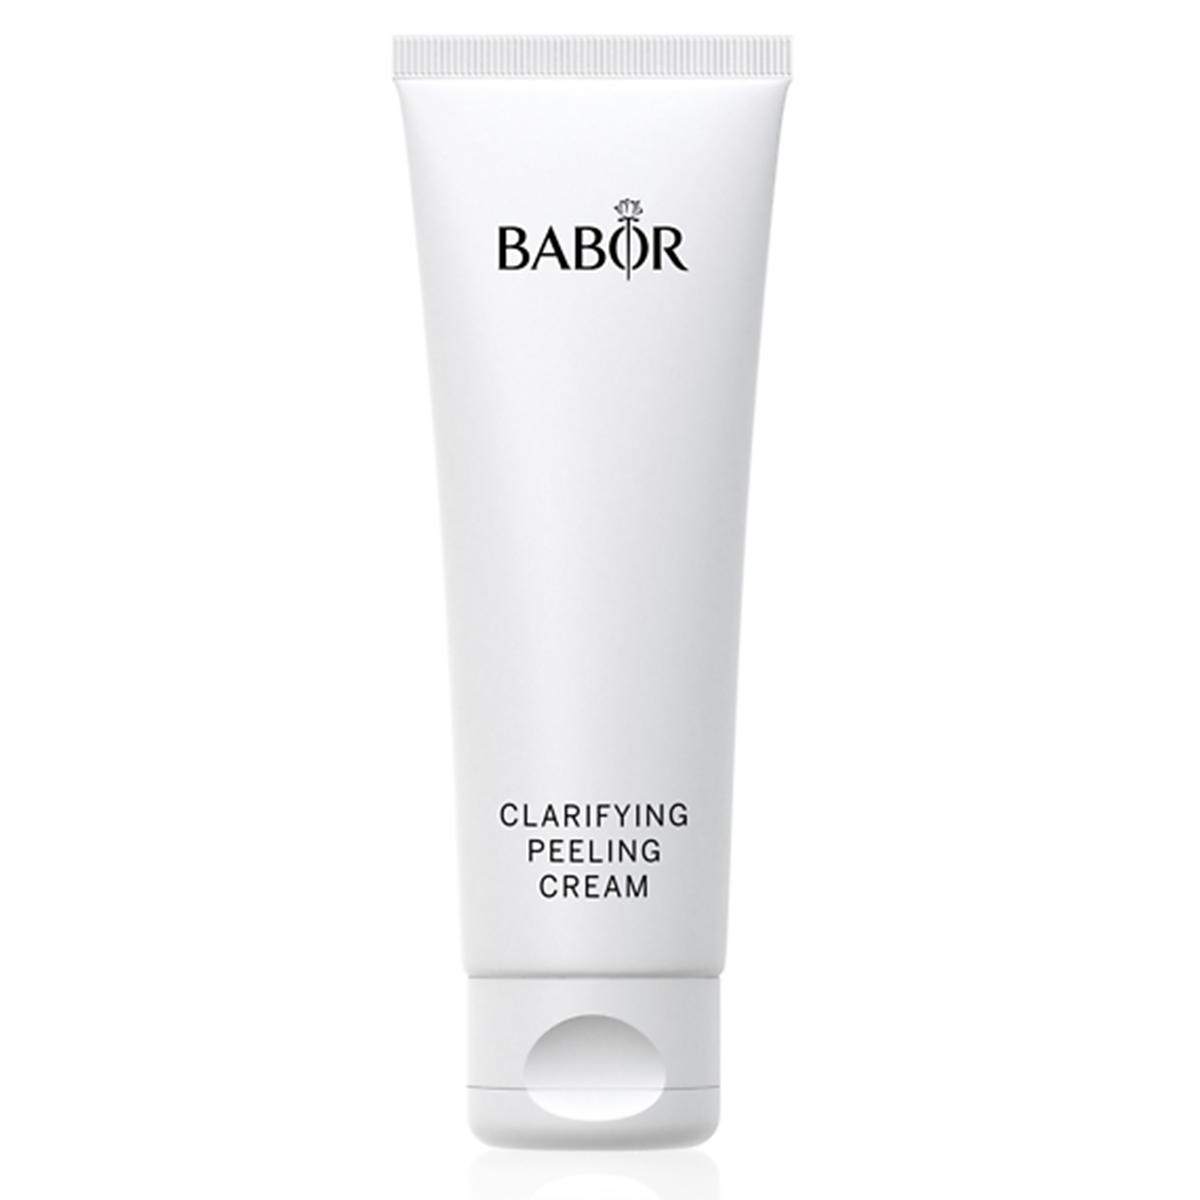 BABOR Clarifying Peeling Cream, 50 ml